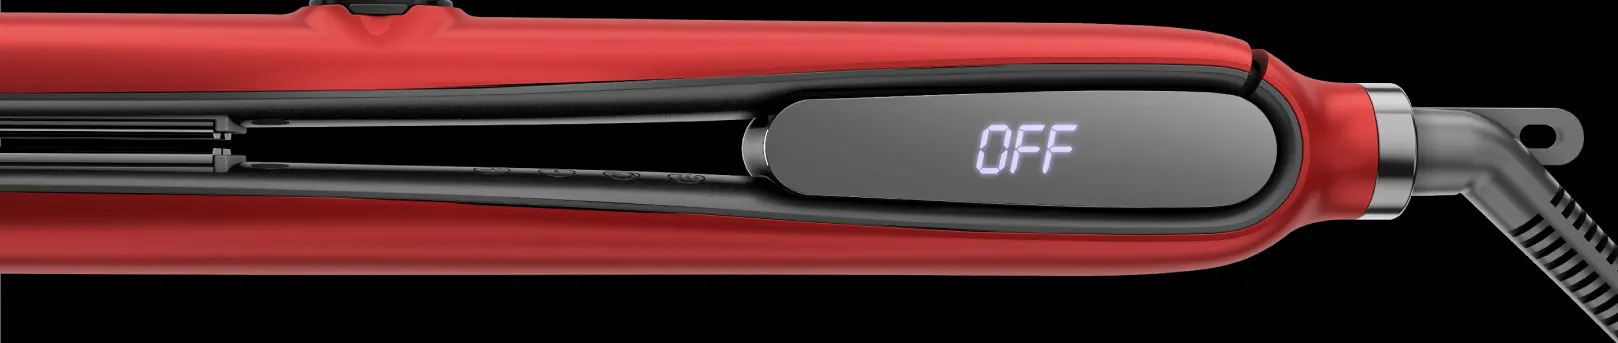 مكواة فرد الشعر بالبخار راش براش X6 PLUS ، ألواح مصنوعة من التورمالين مطلي بالسيراميك ،230° سيلزيوس، روز جولد